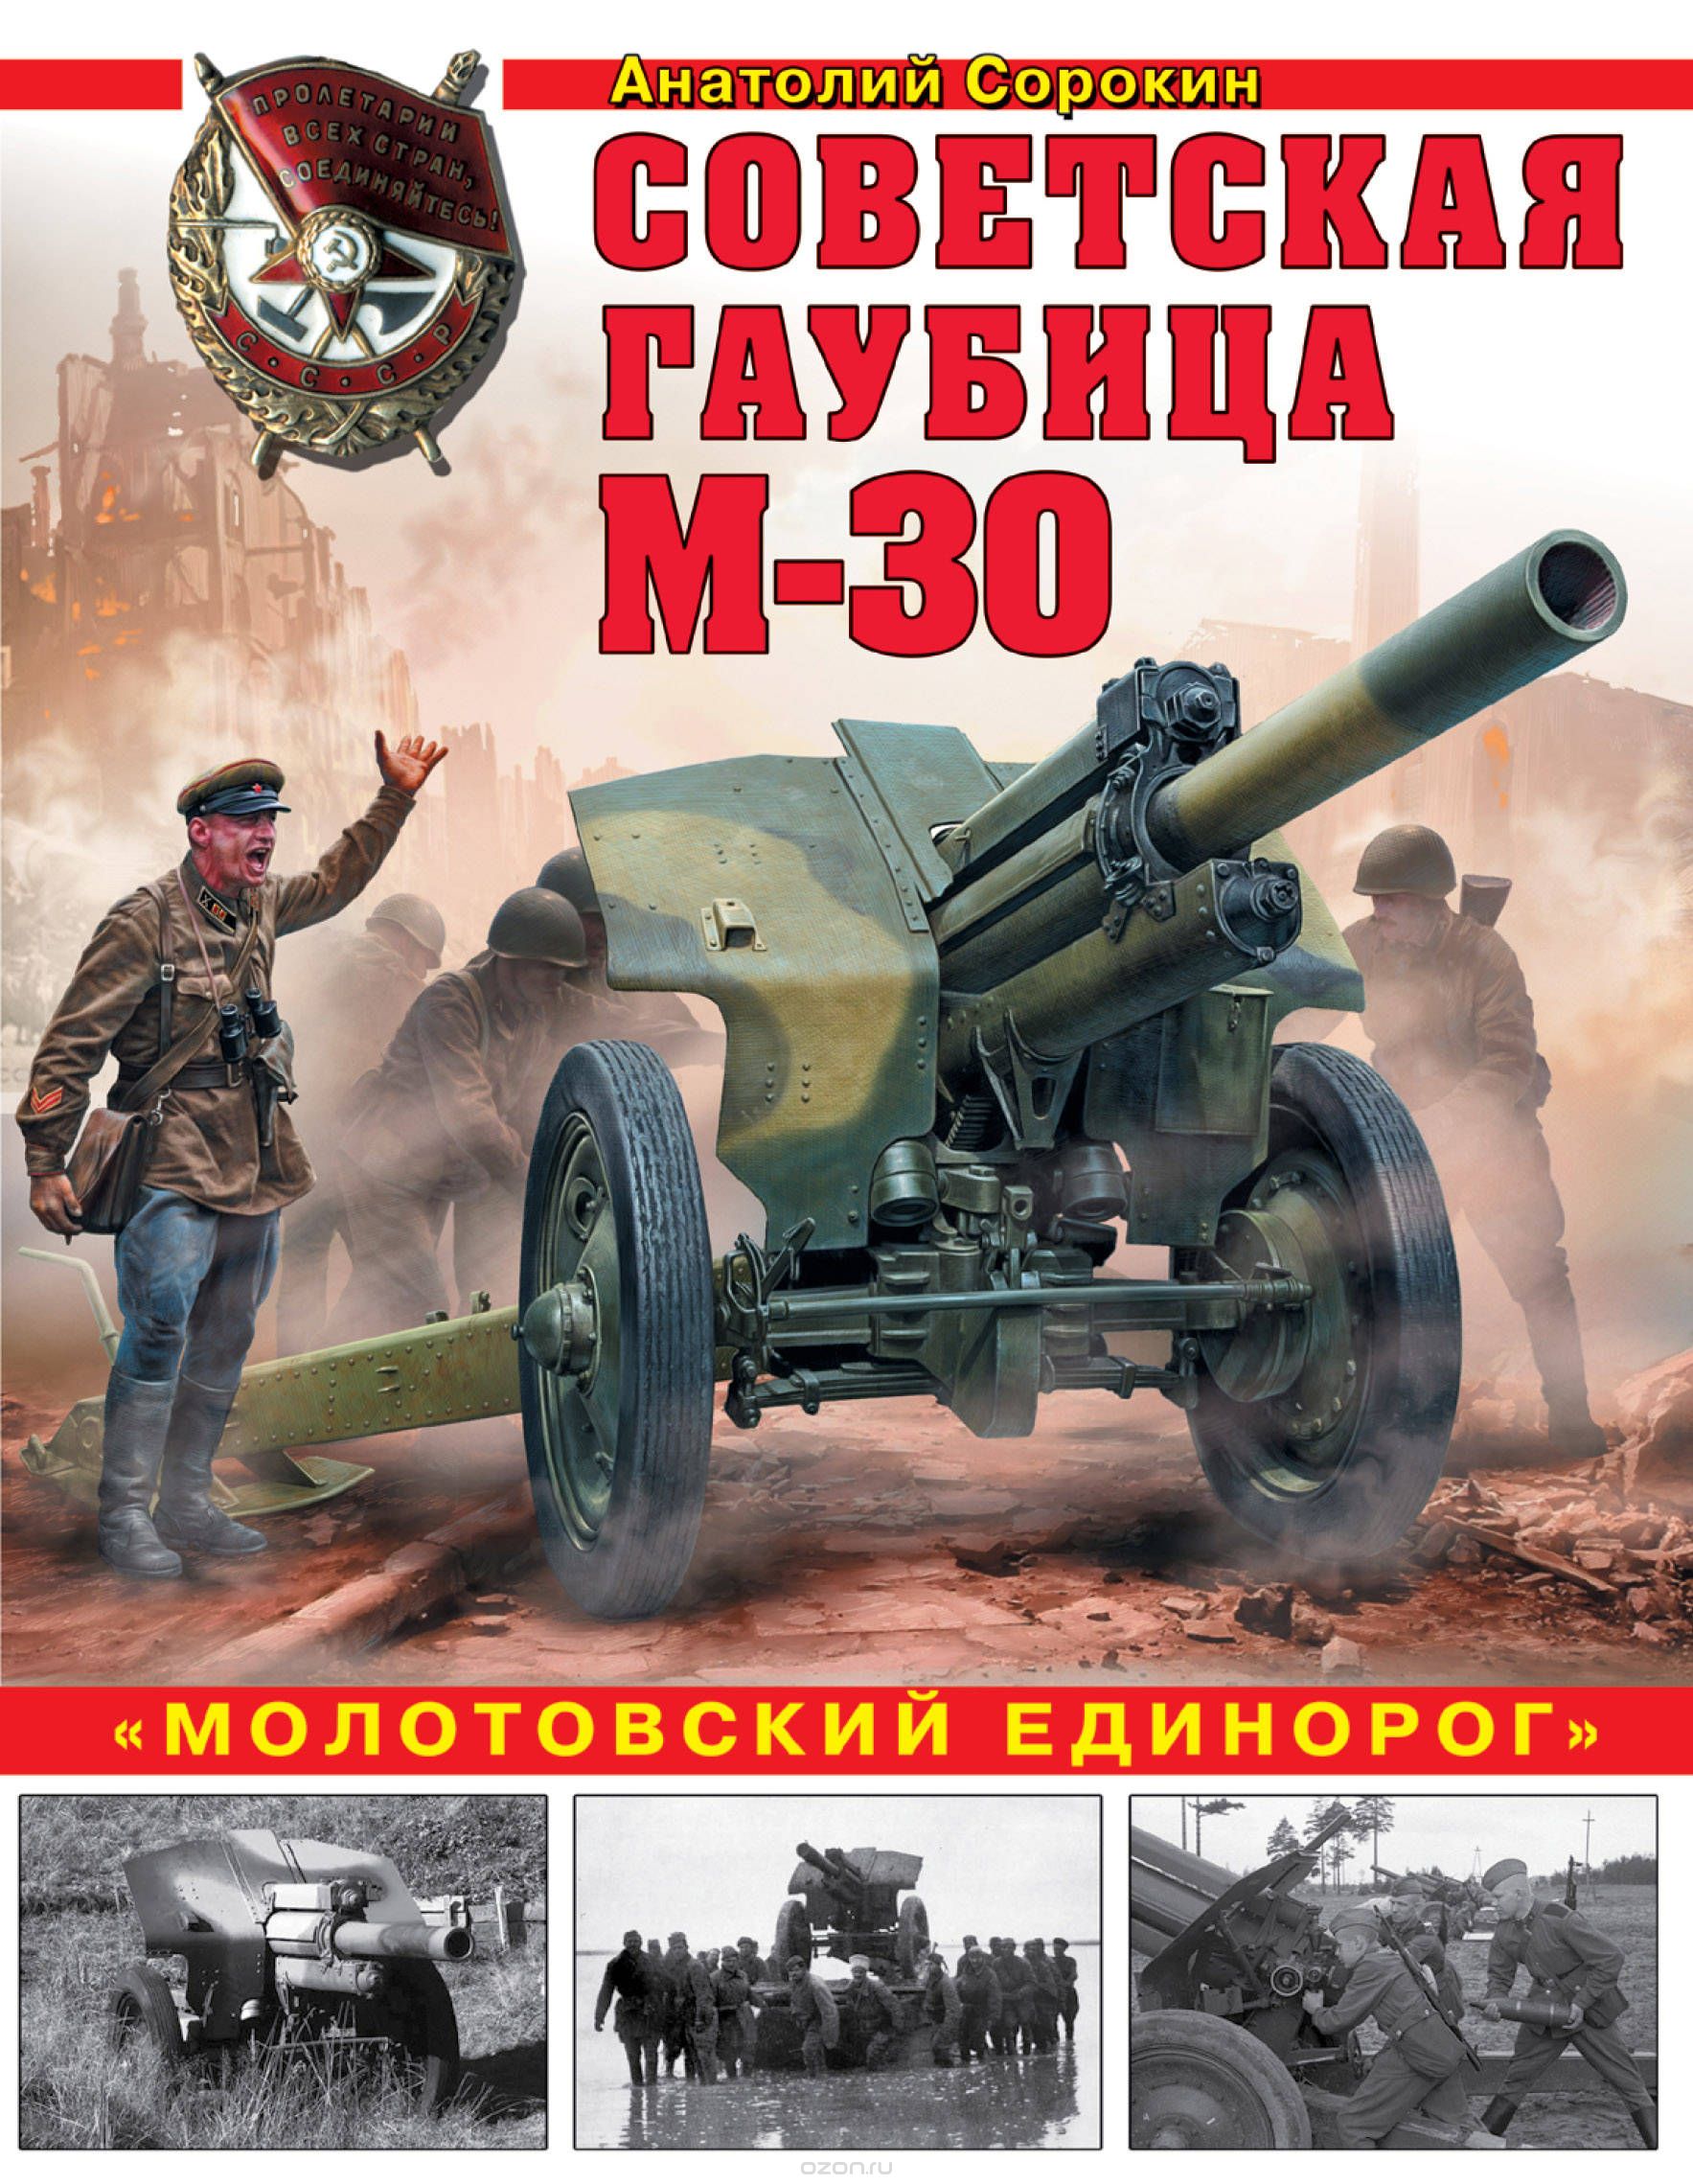 Советская гаубица М-30. "Молотовский единорог", Анатолий Сорокин